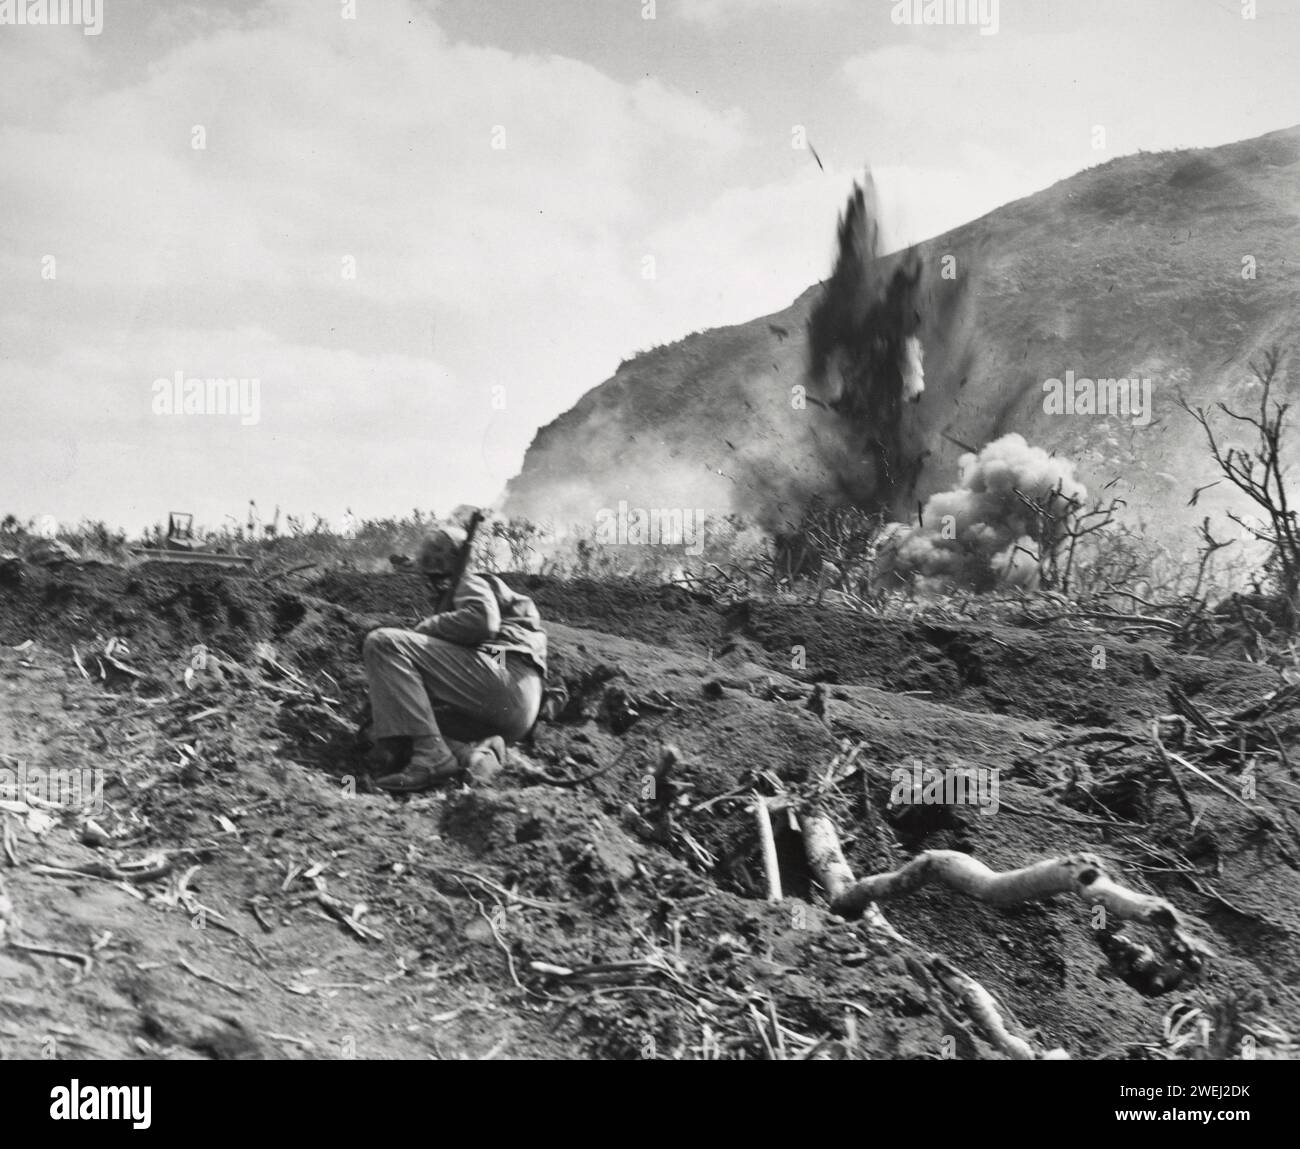 Marines combattant près de la base du mont Suribachi pendant la bataille d'Iwo Jima 1945 Banque D'Images